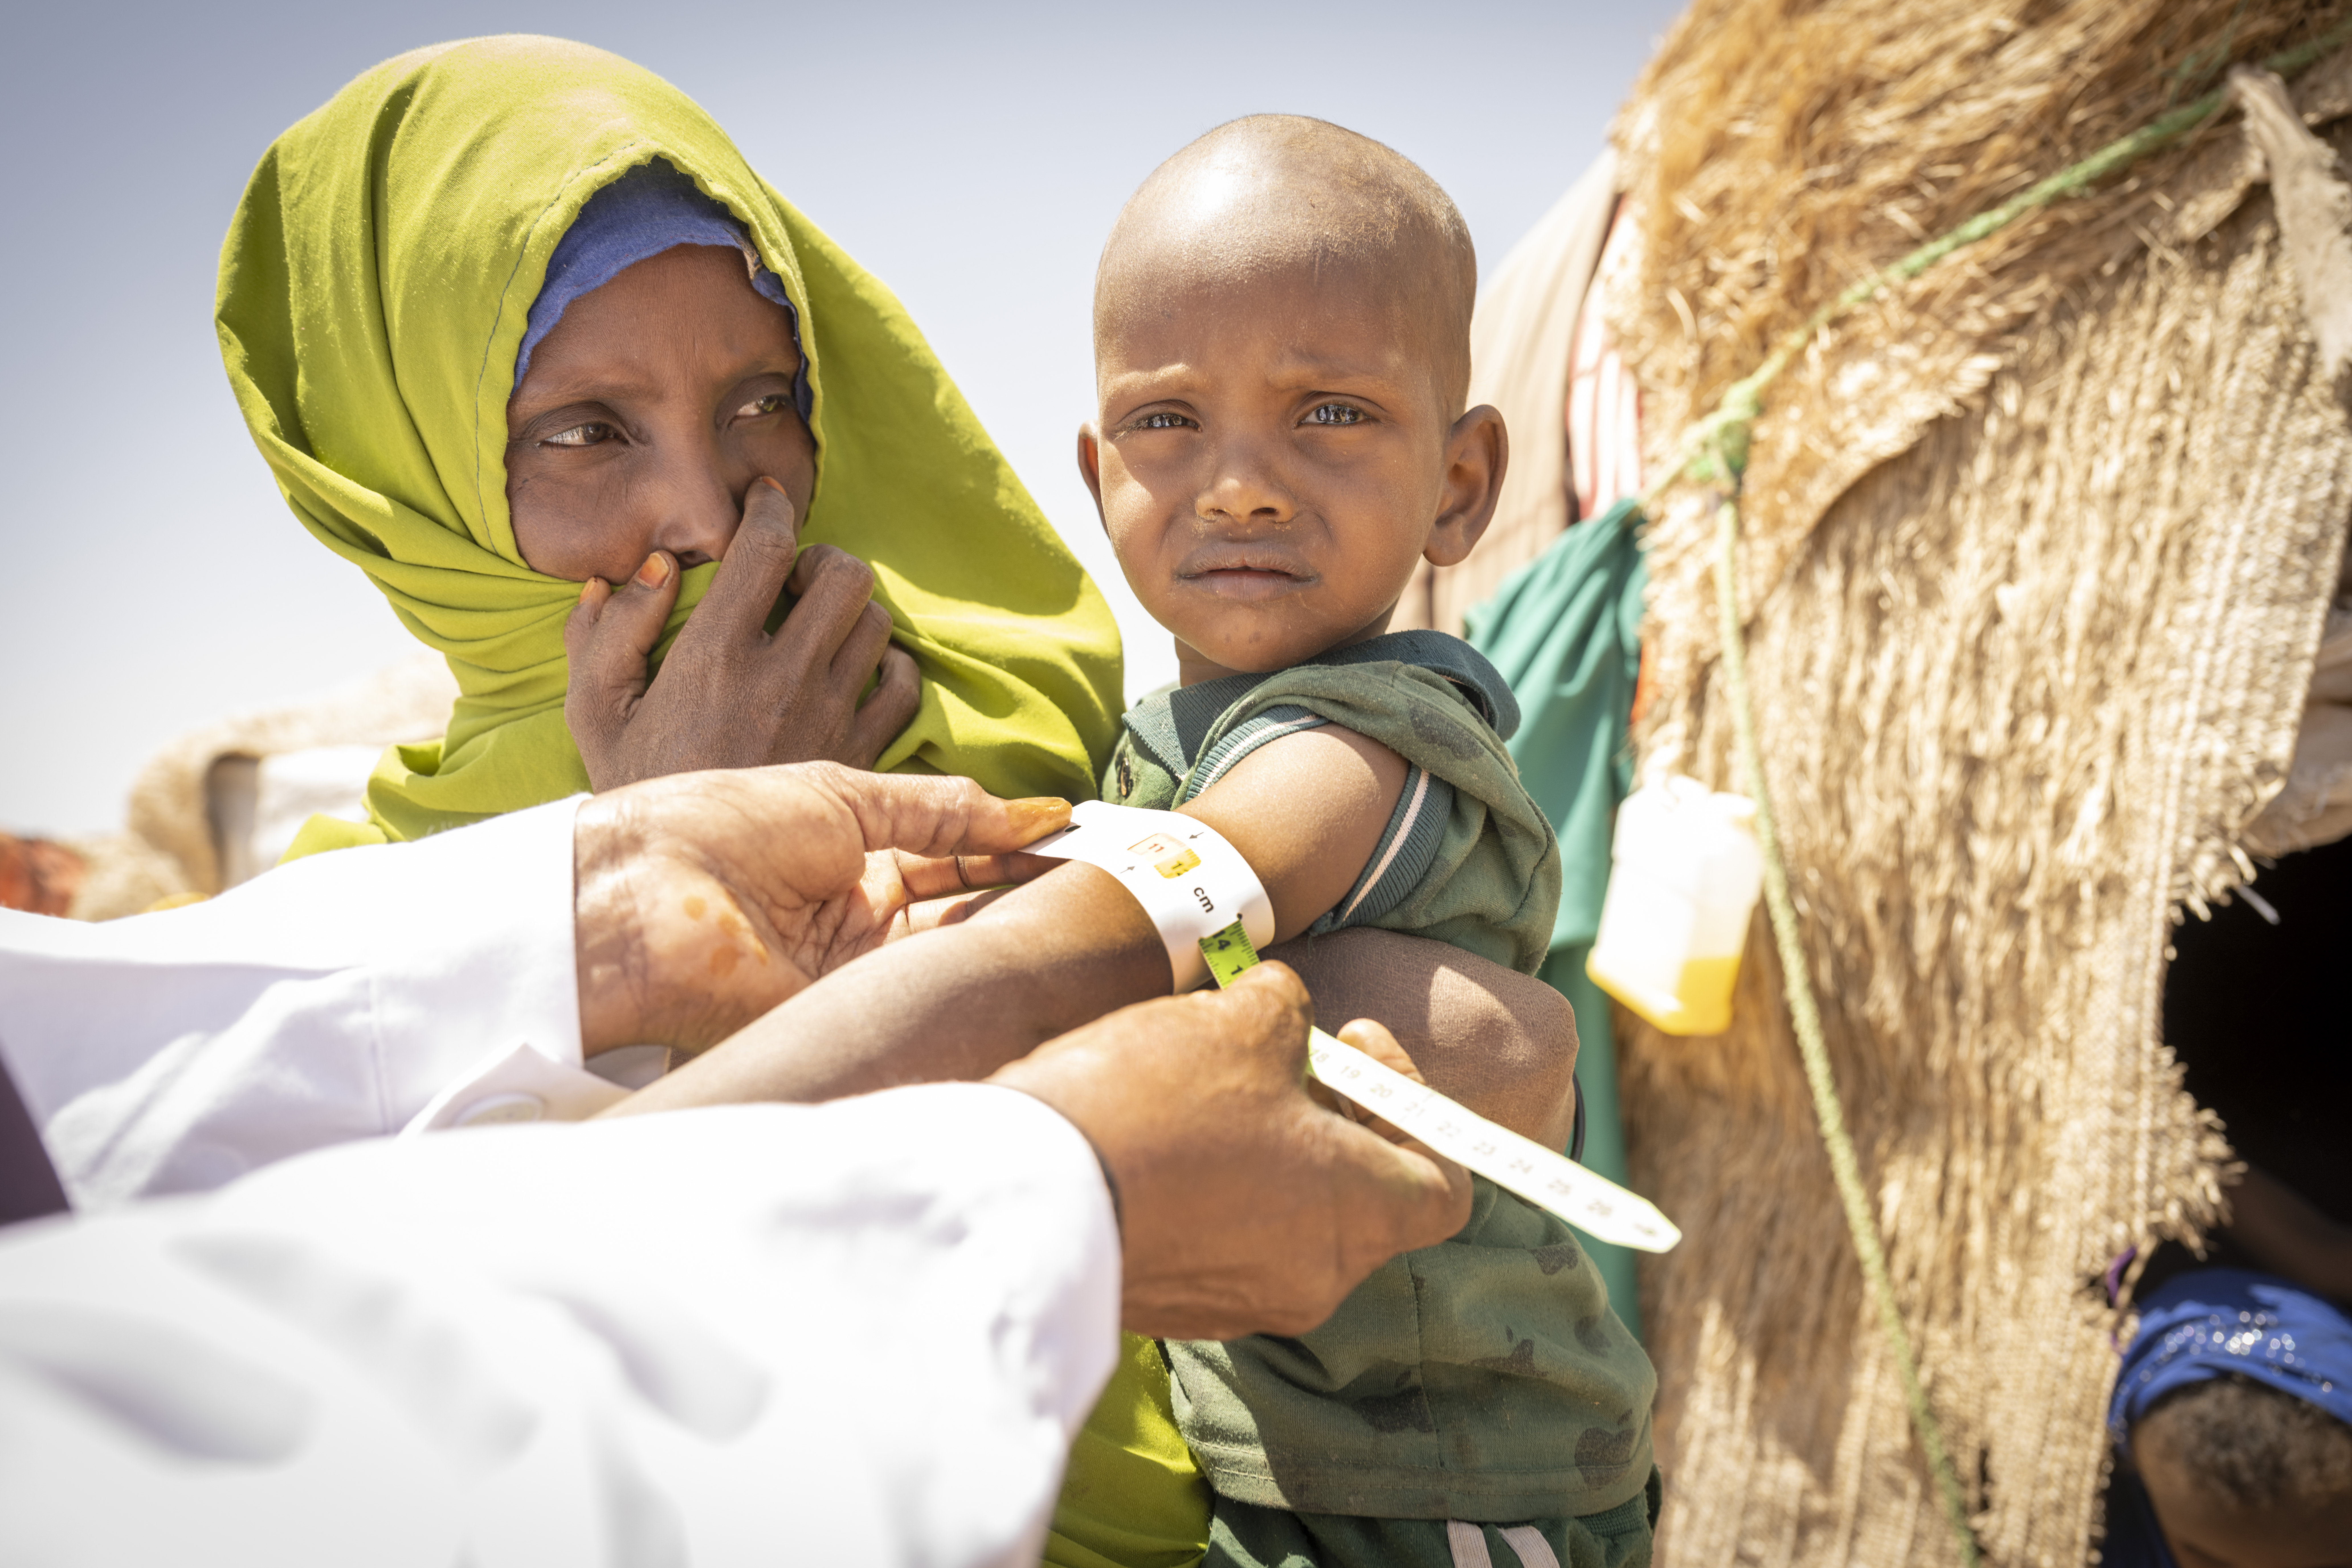 SULTKATASTROFE: «Dersom regnet nå igjen uteblir, og det ikke kommer inn massiv hjelp utenfra, vil vi miste kontrollen og se massiv død i store deler av Somalia de nærmeste månedene,» sier Dr. Hassan Isse, utsendt fra Somalias helsedepartmenet. «Her i leiren er allerede 80 prosent av barna under 5 år underernært.» FOTO: Håvard Bjelland.